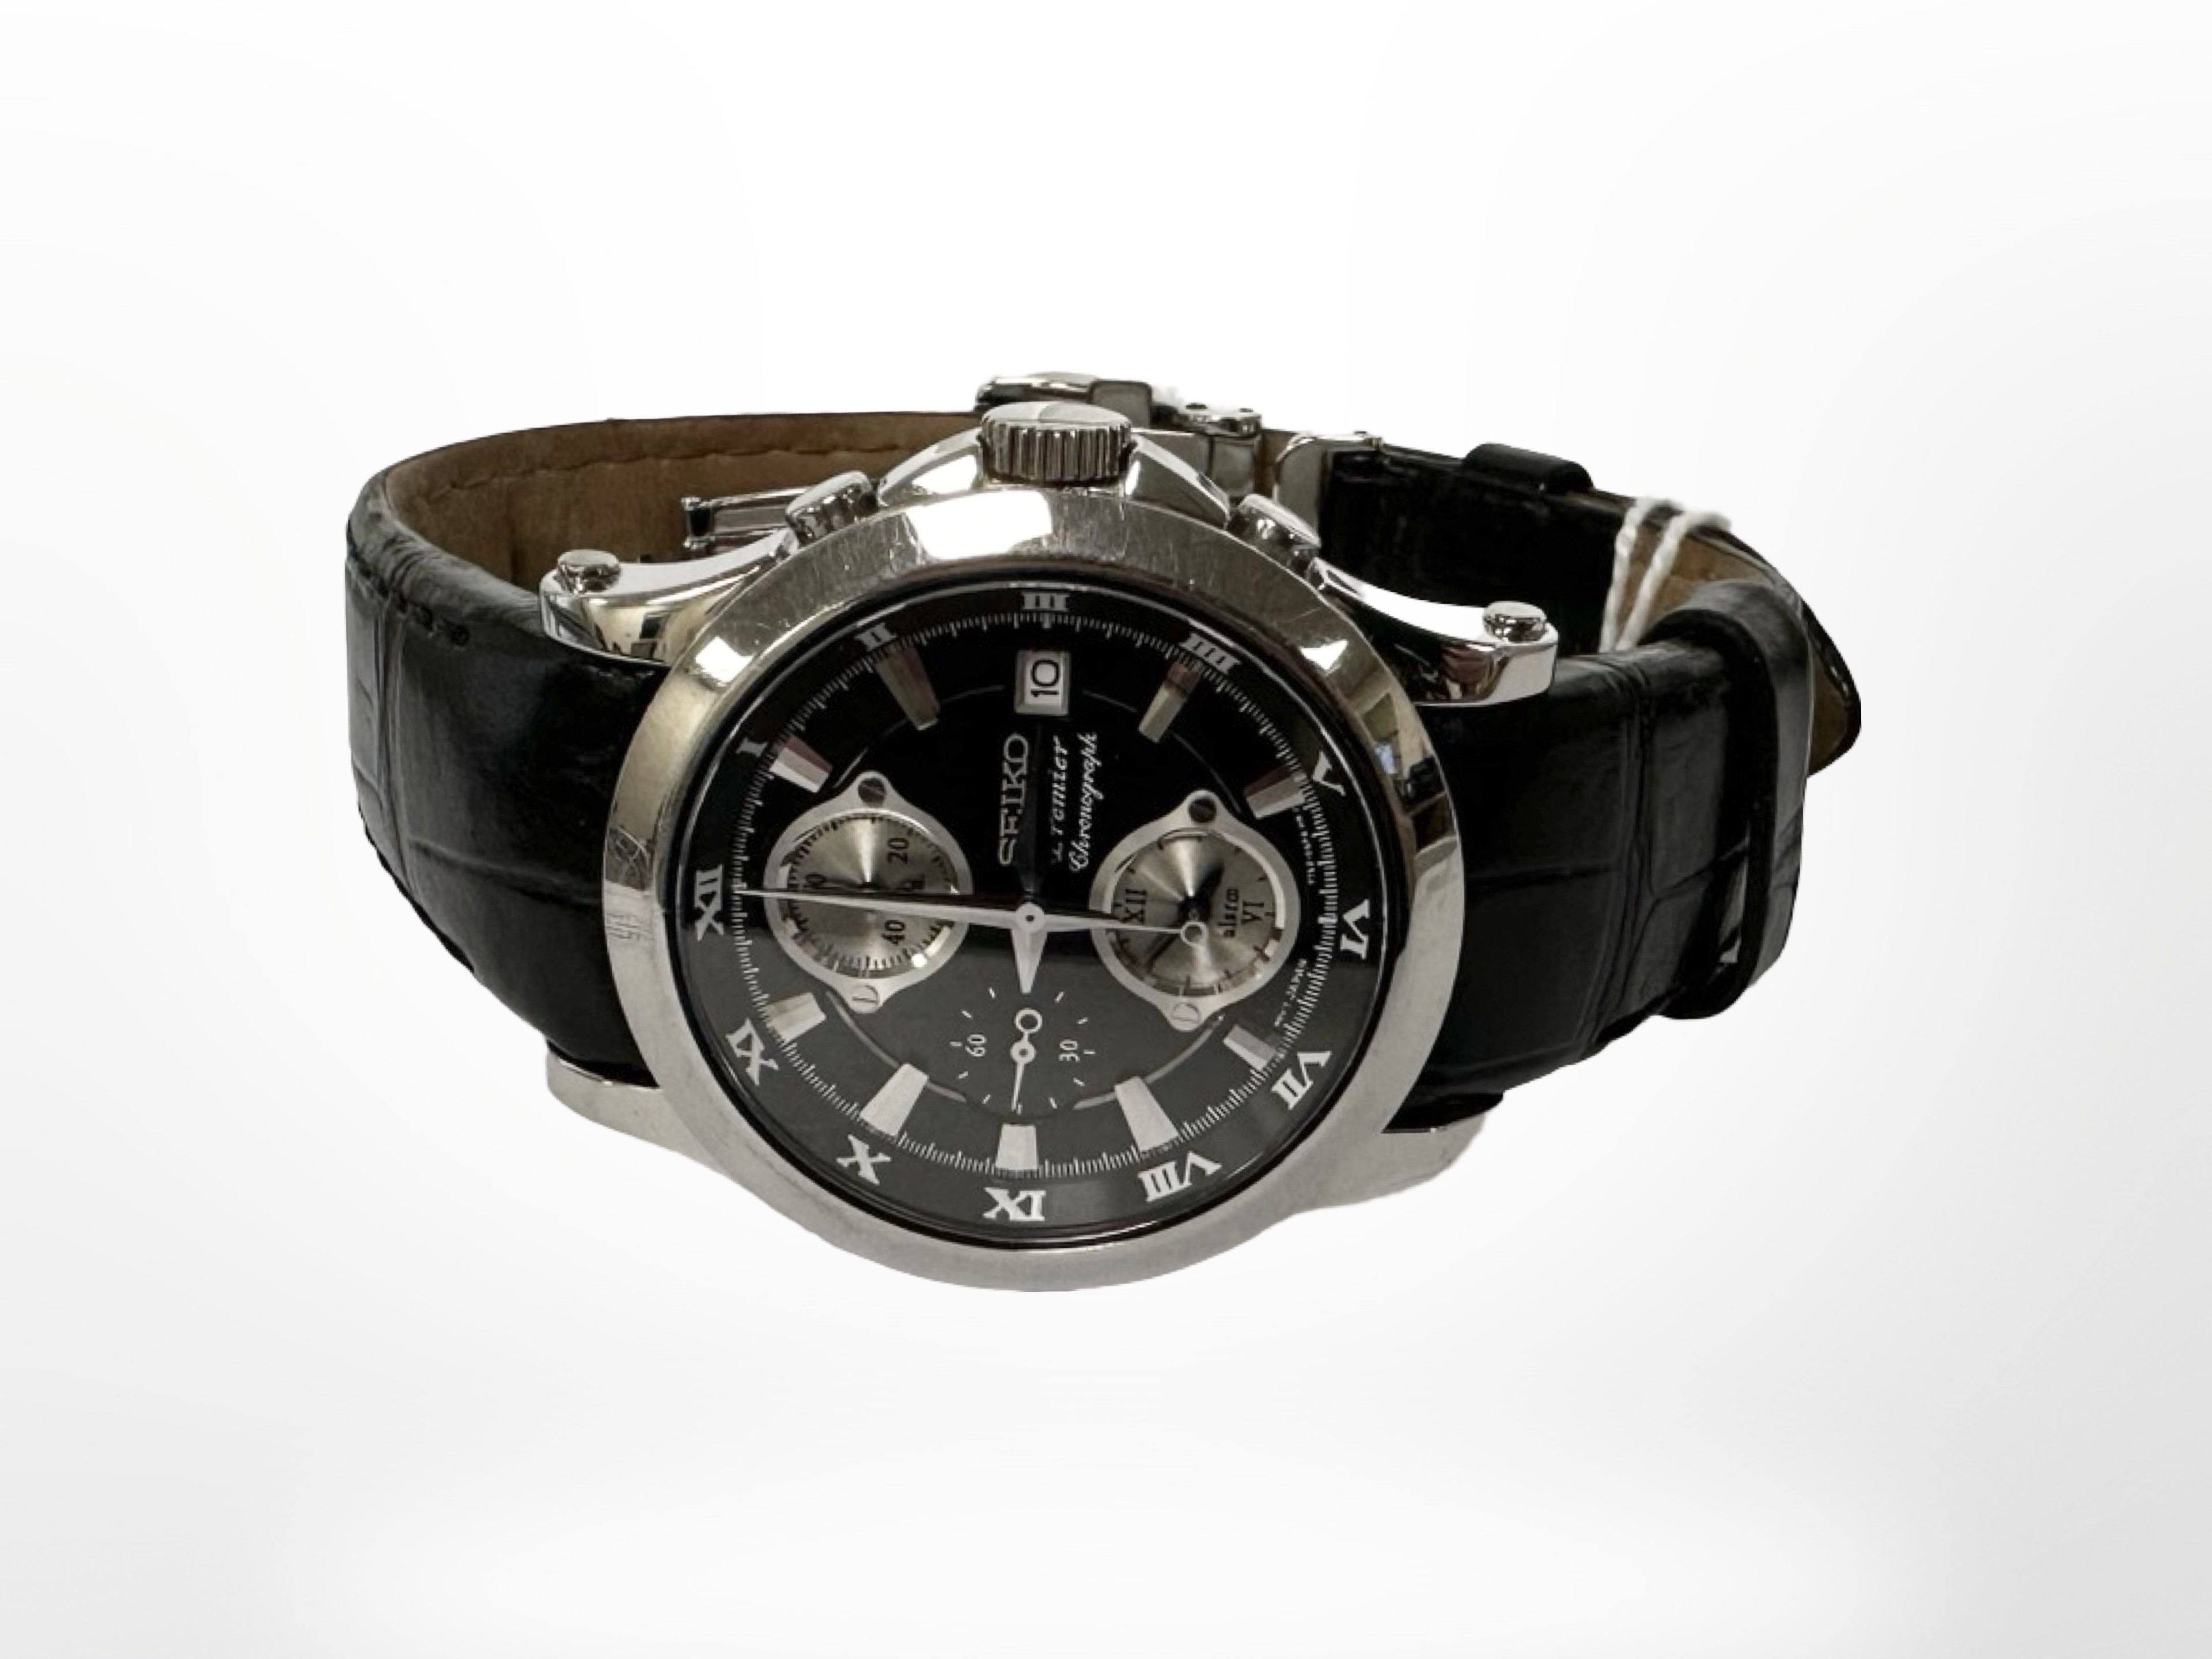 A Gent's Seiko Premier wristwatch